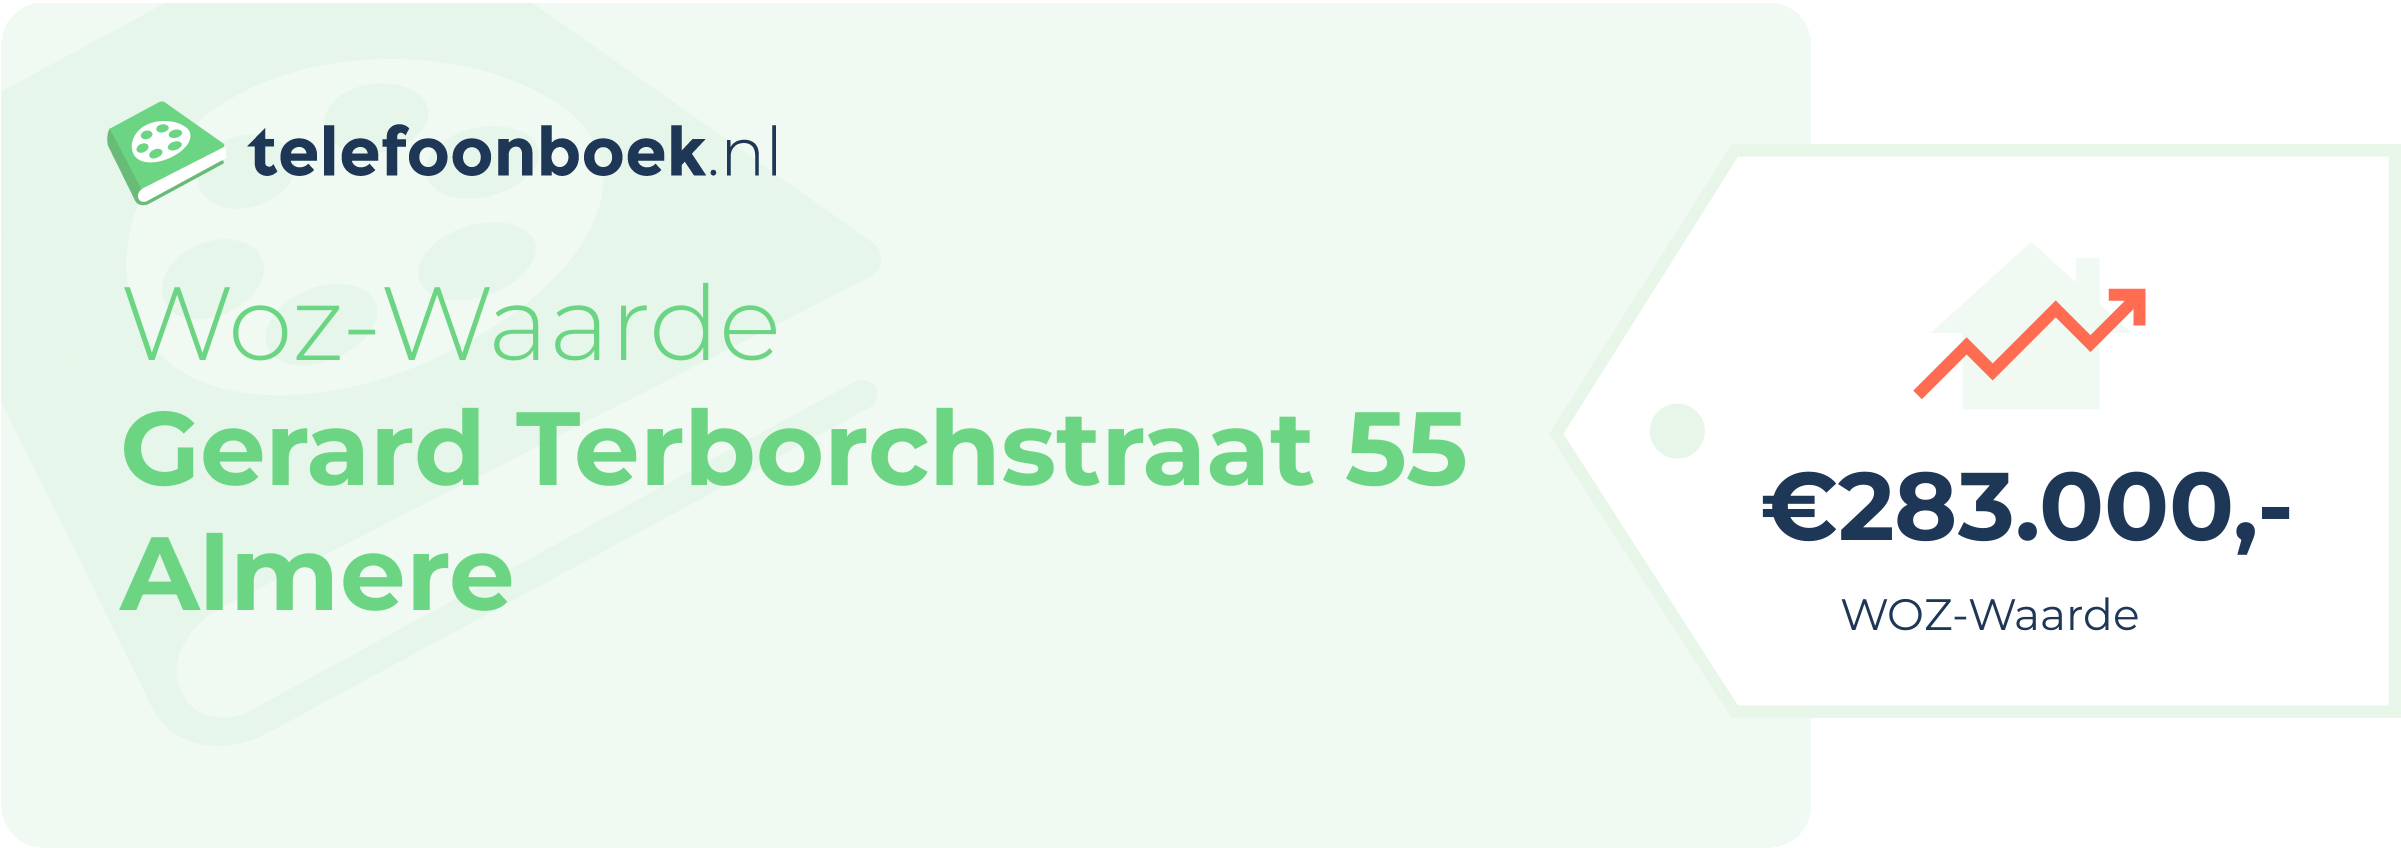 WOZ-waarde Gerard Terborchstraat 55 Almere